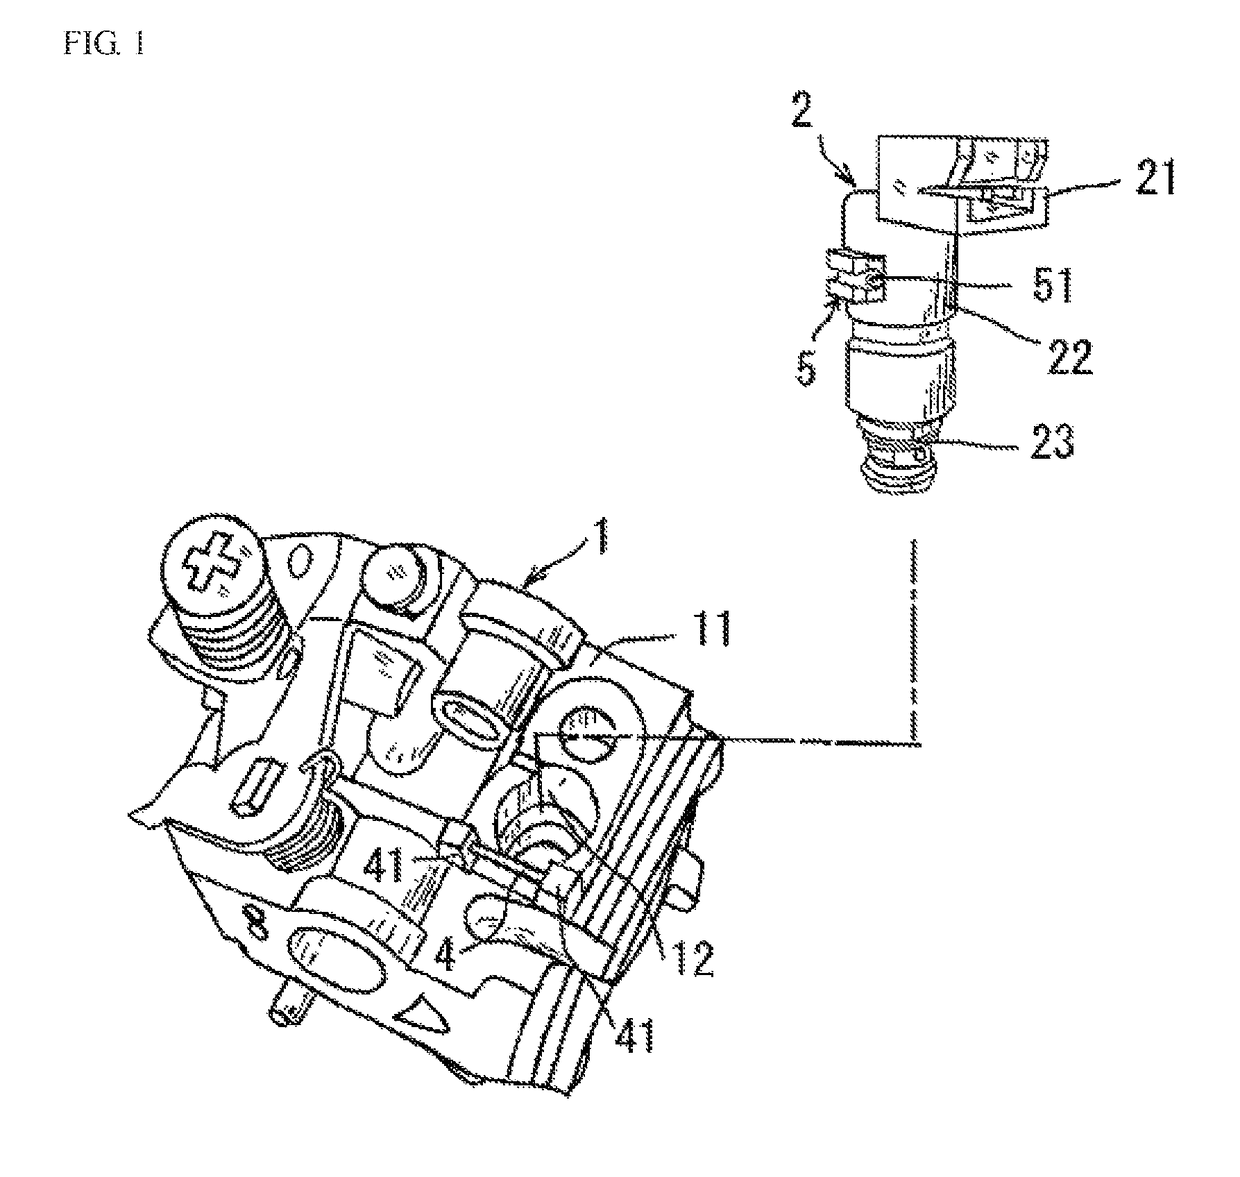 Attachment structure for solenoid valve to carburetor unit